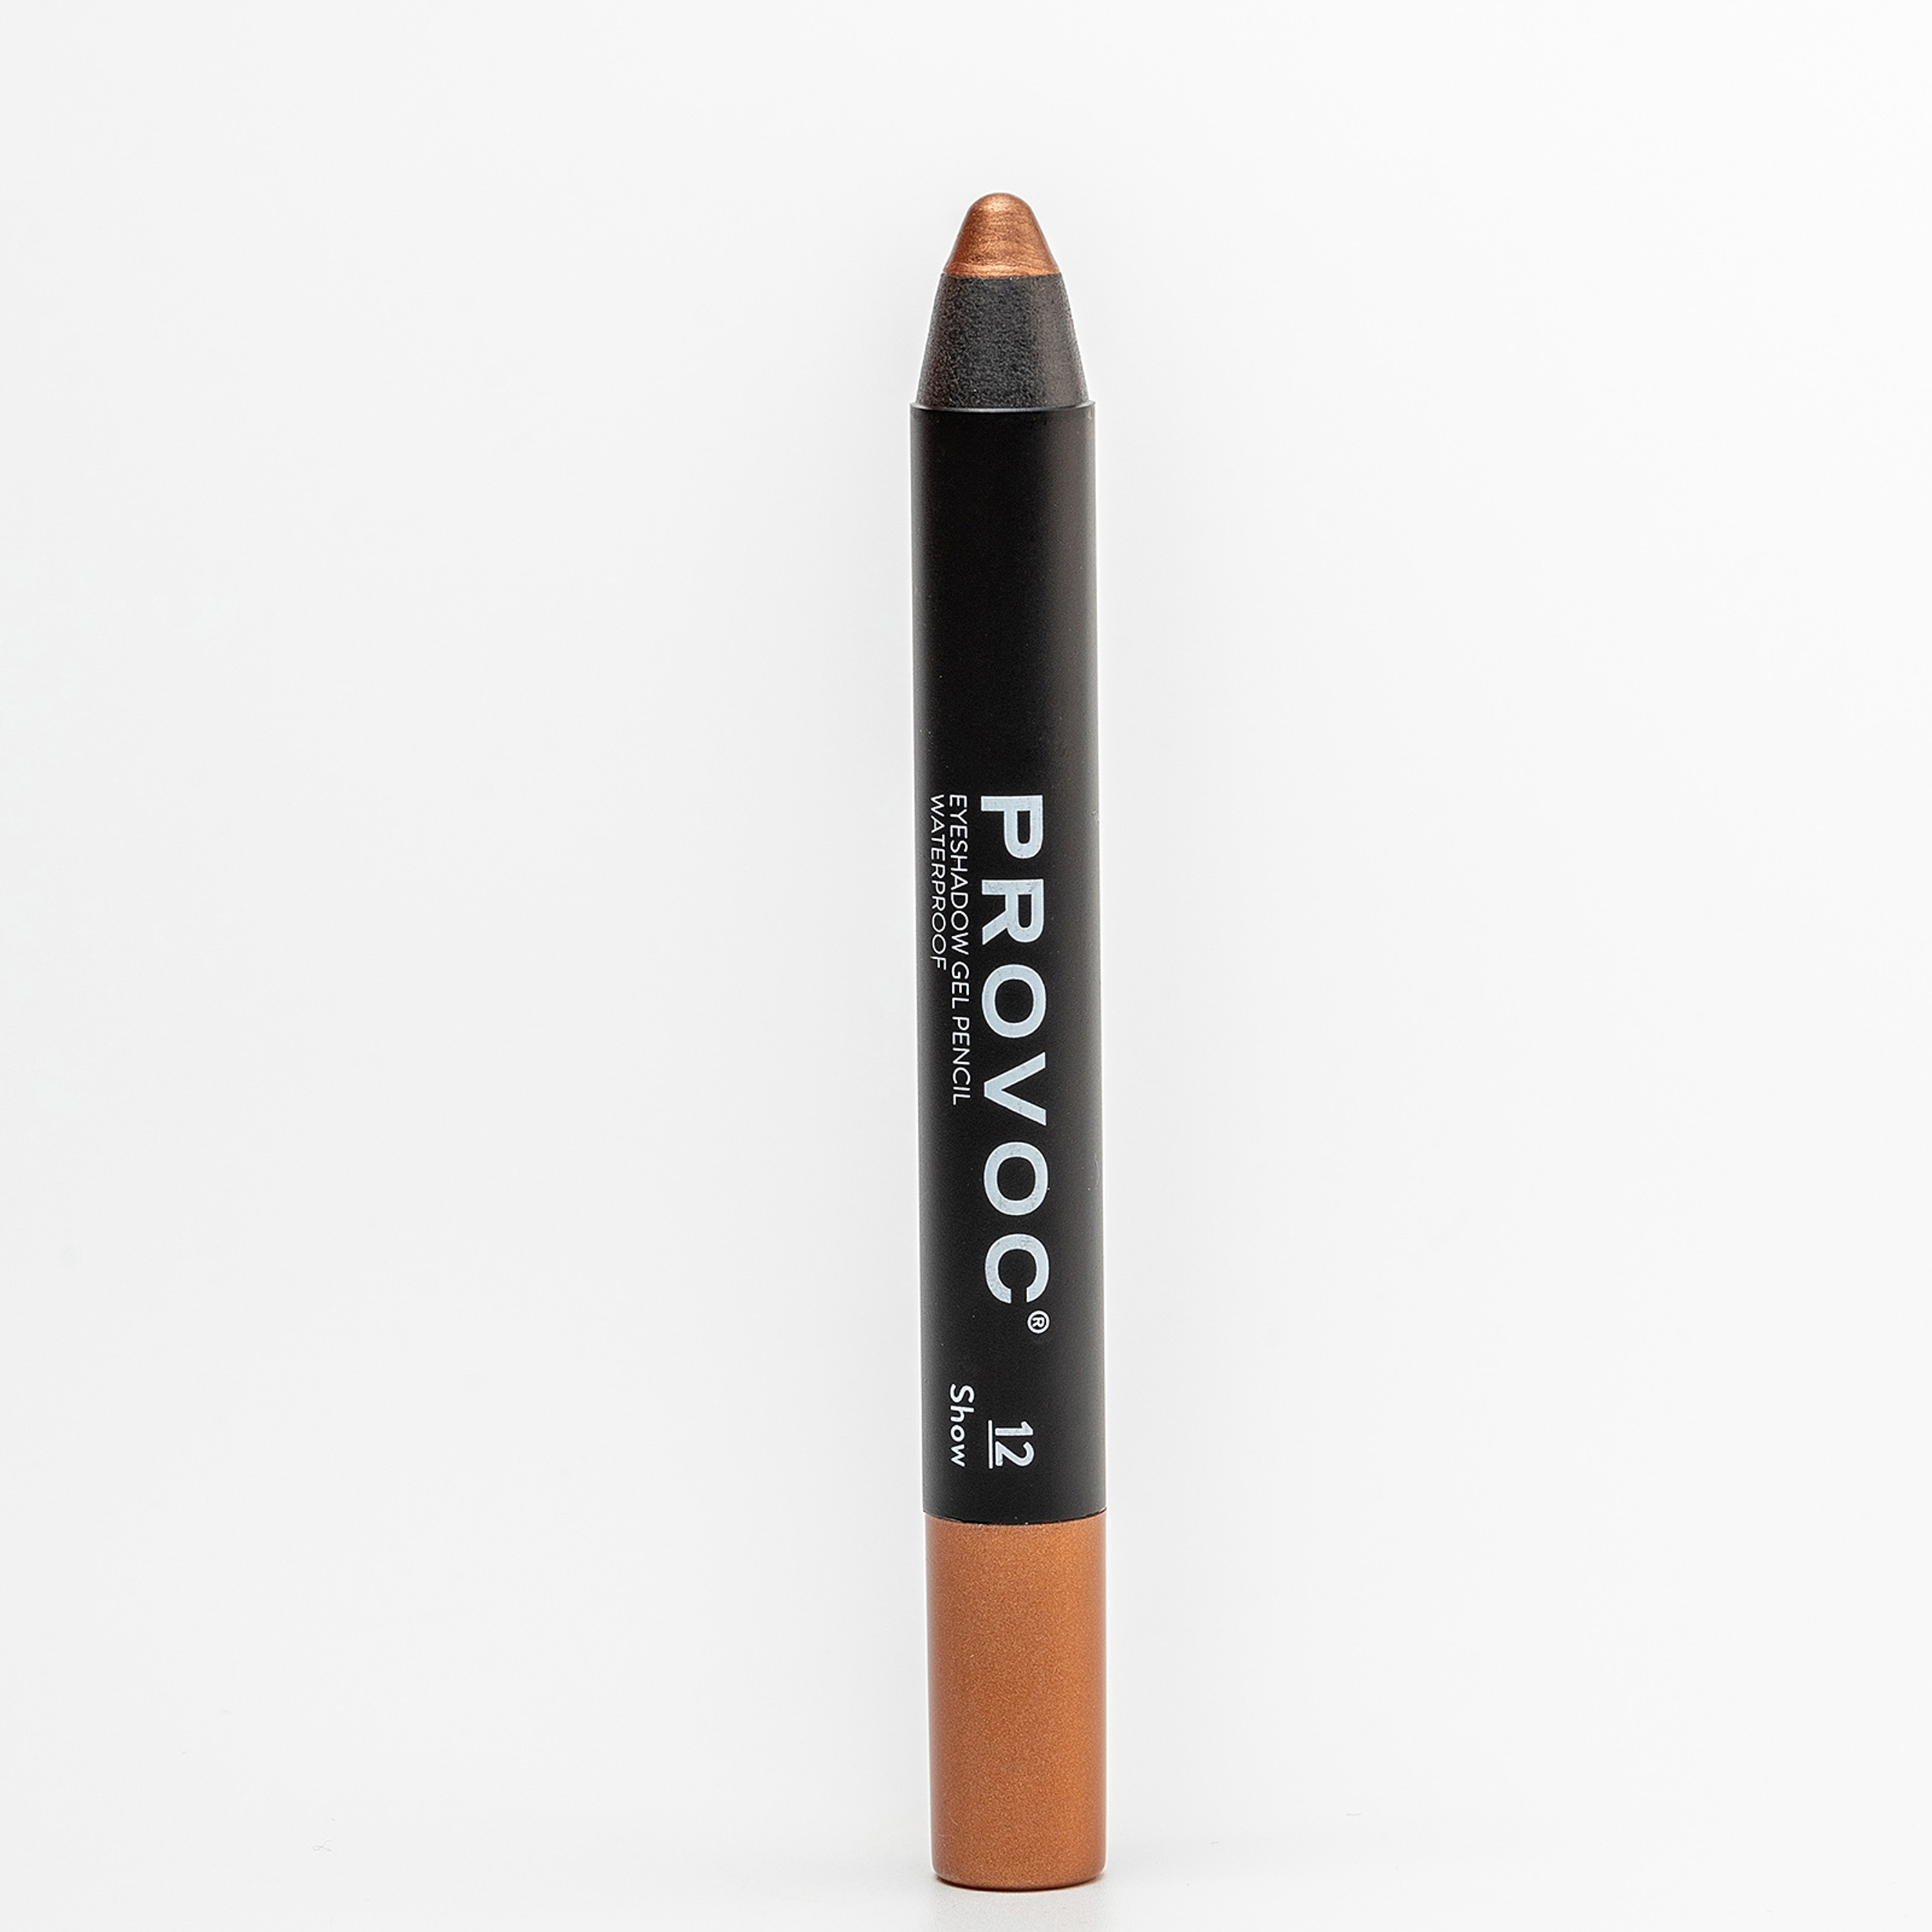 Тени-карандаш PROVOC водостойкие 12 Show тени карандаш водостойкие шиммер 03 мокрый асфальт eyeshadow pencil 2 3 г